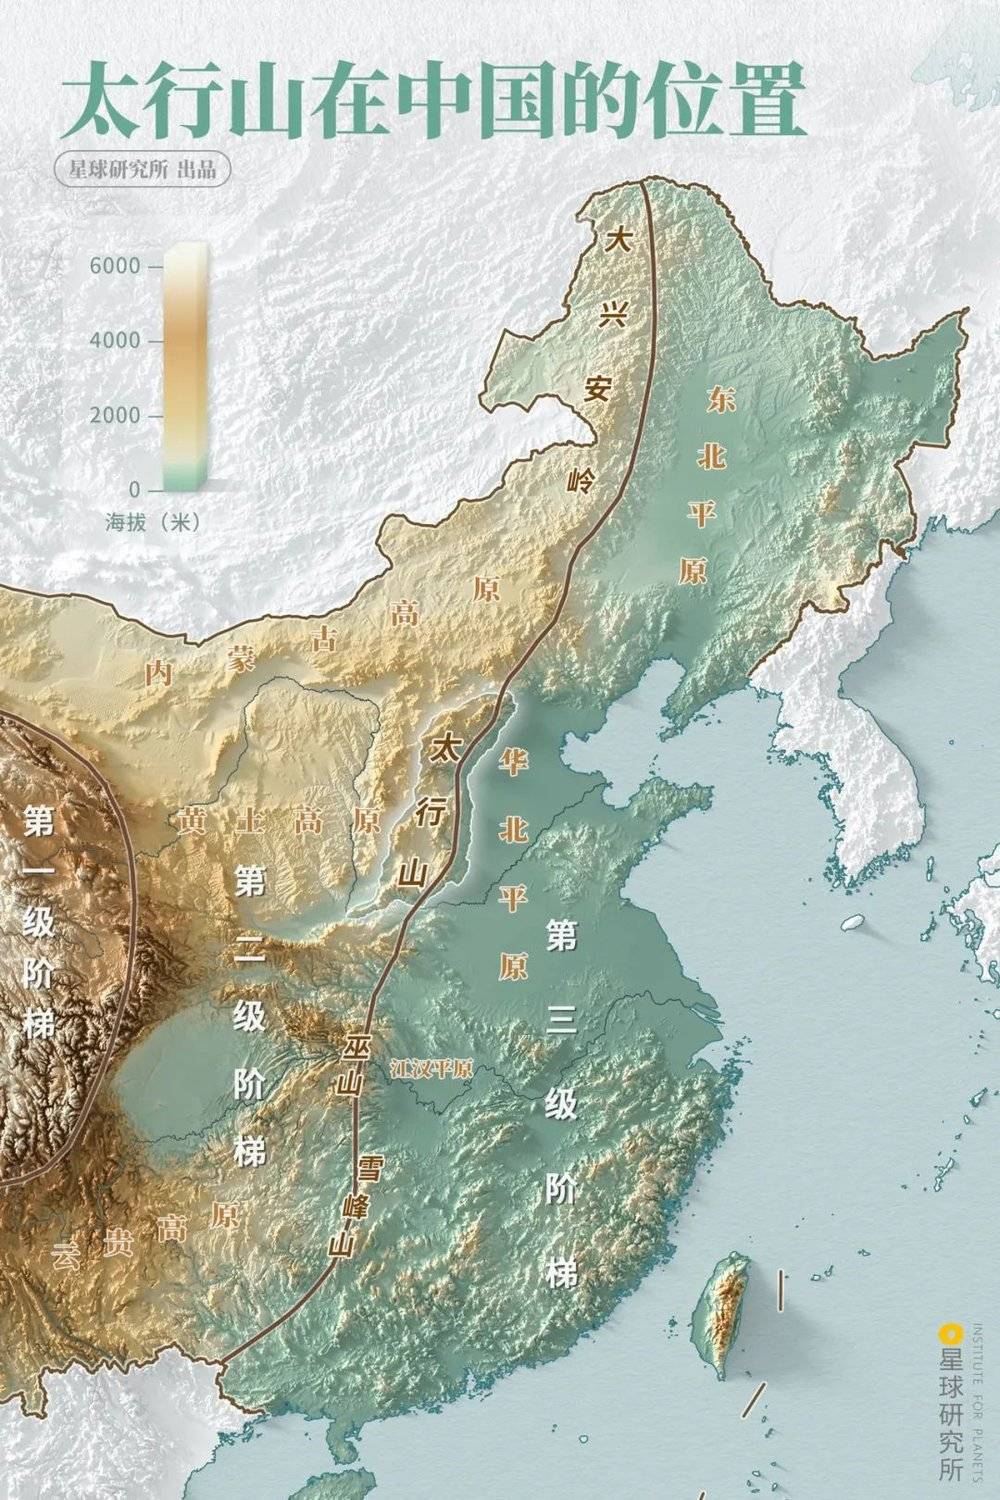 太行山在中国的位置。制图@陈景逸/星球研究所